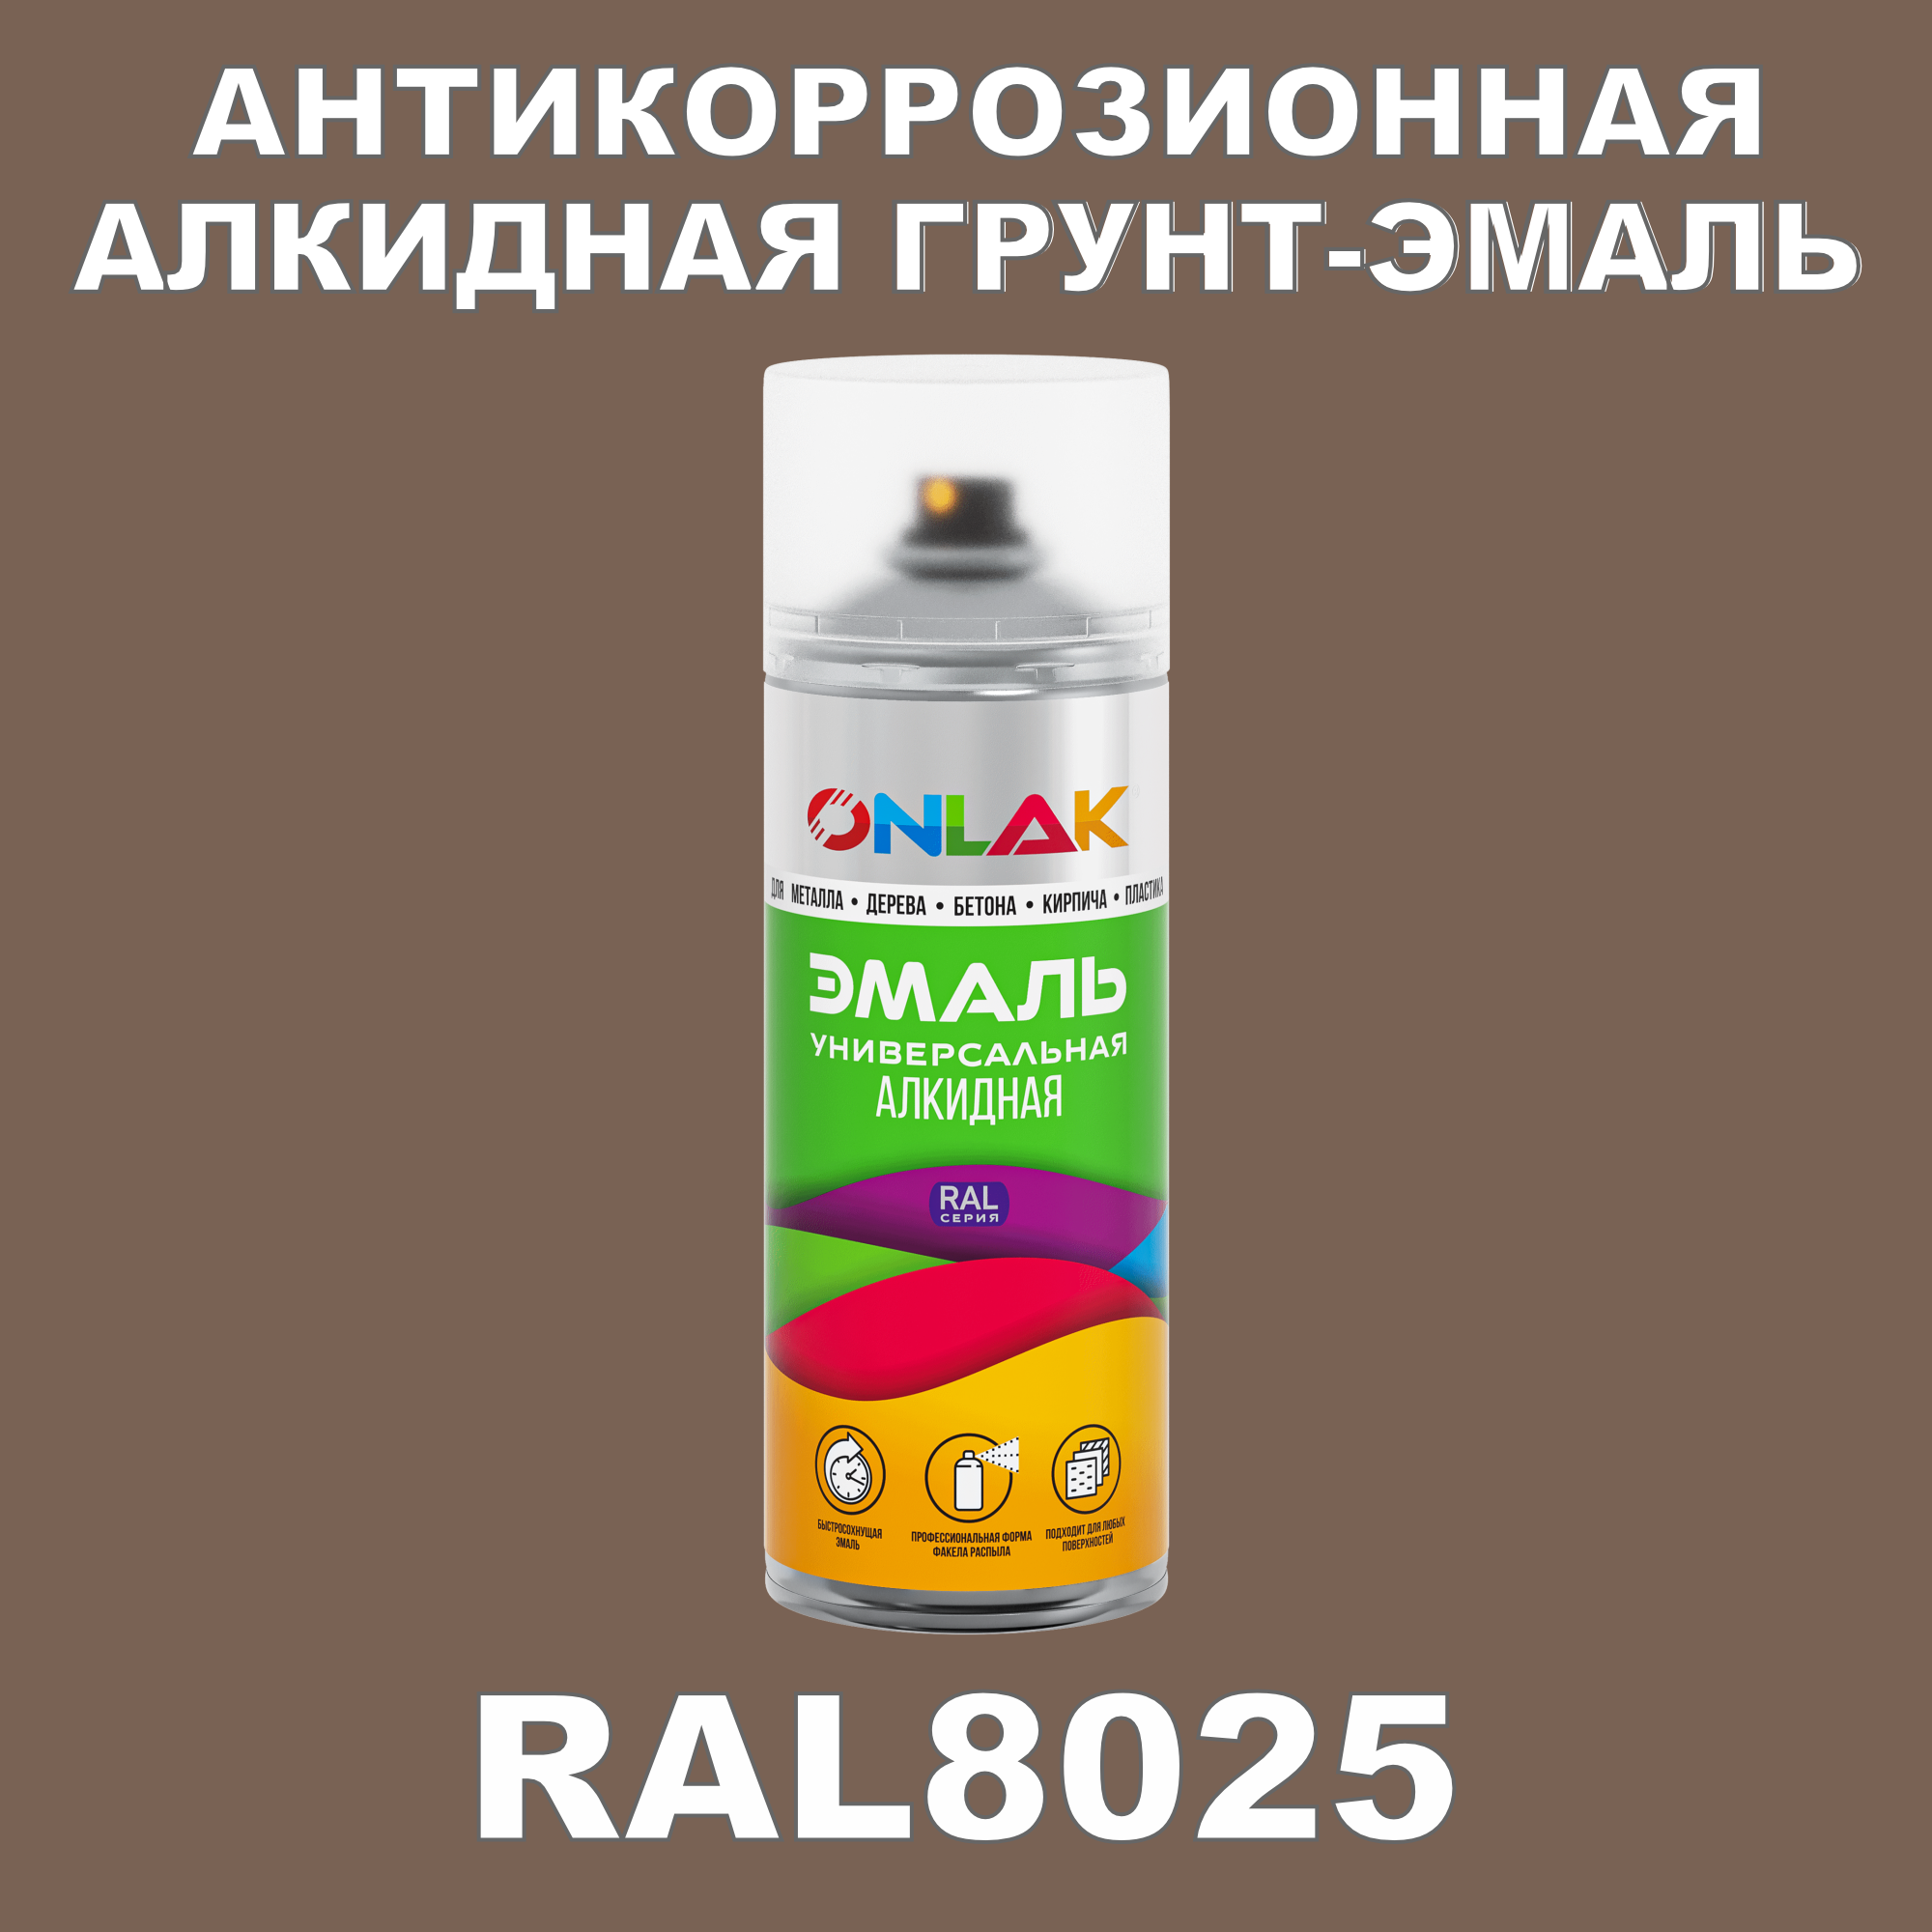 Антикоррозионная грунт-эмаль ONLAK RAL 8025,коричневый,652 мл artuniq color brown ной грунт для аквариума коричневый 9 кг